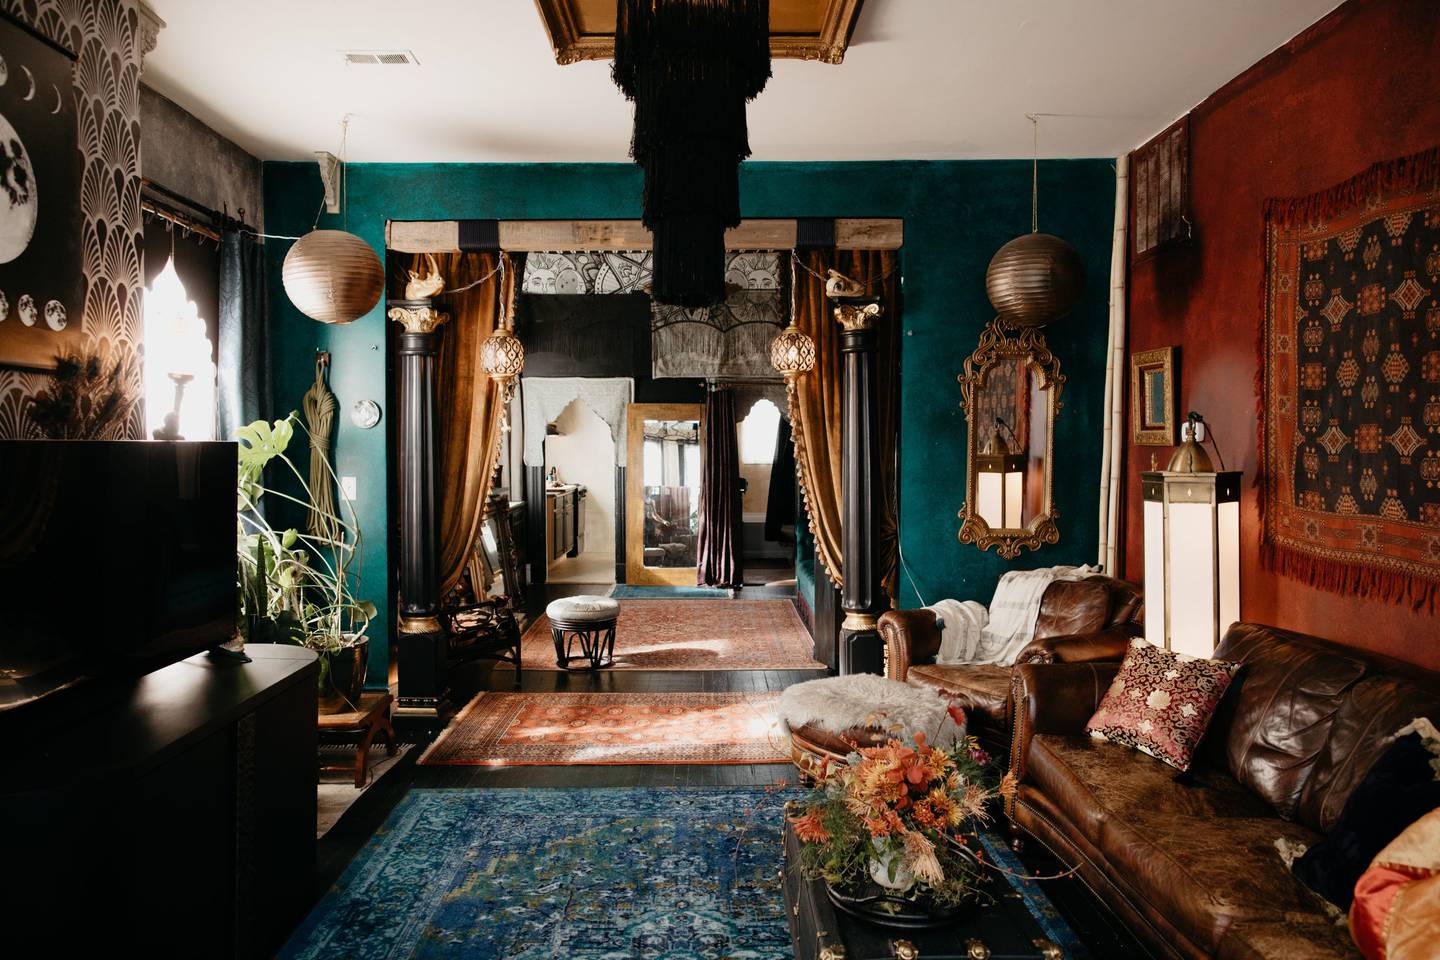 El anfitrión describe su estilo como "glamour gótico de Nueva Orleans". 
Los colores oscuros, las cortinas con borlas y los tapices de pared se combinan para crear el aspecto distintivo. (Airbnb)dfd